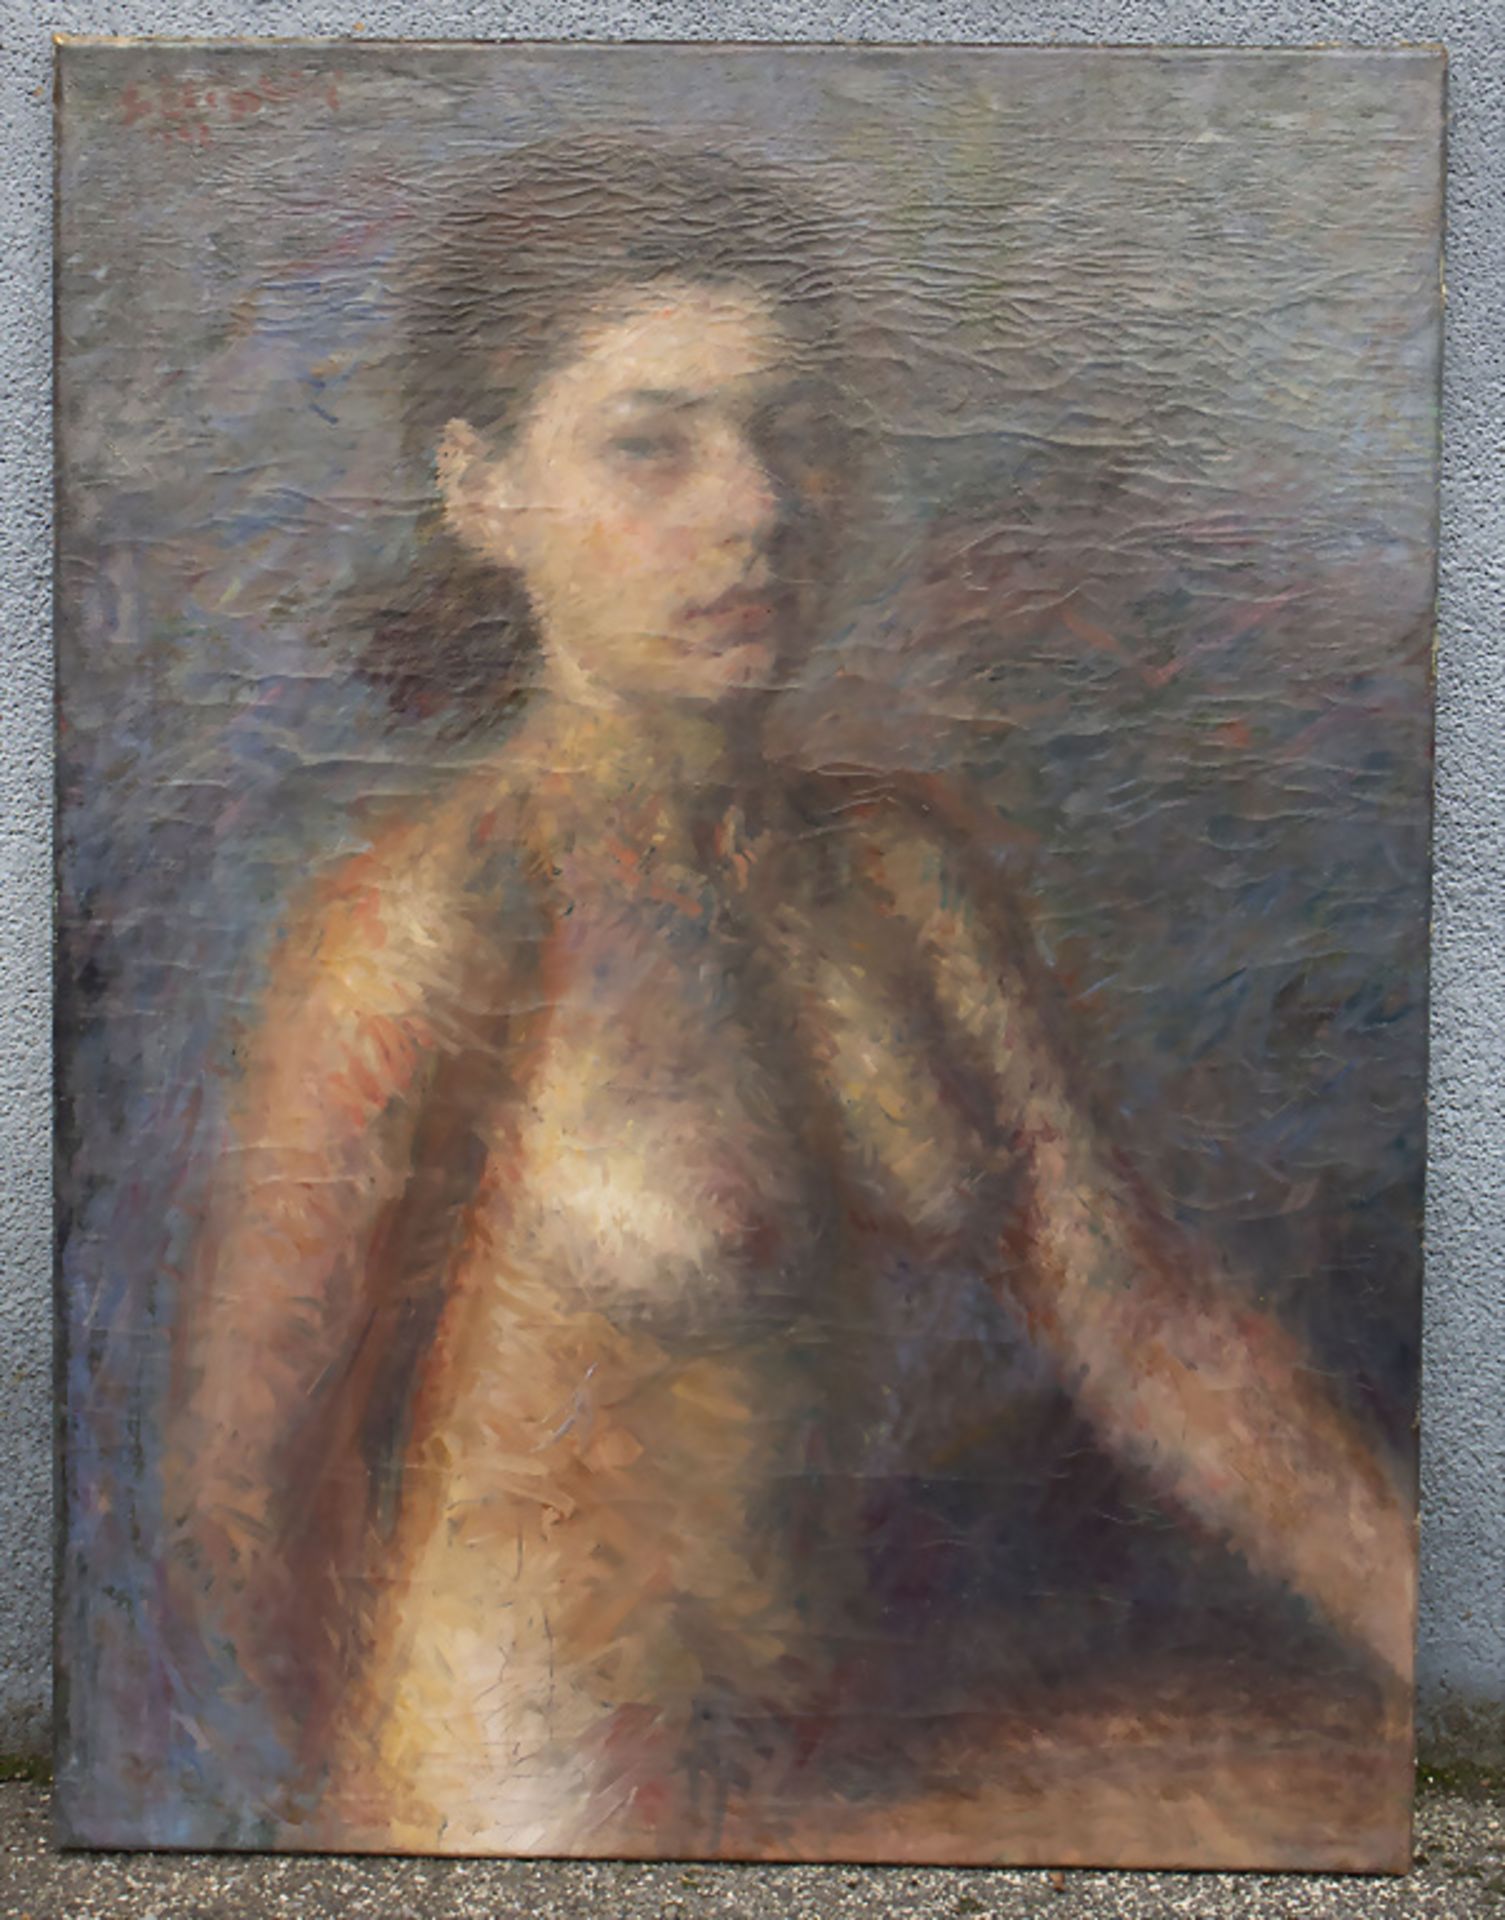 Laszlo FELEGYHAZI (1907-1986), Frauenakt / Female nude, 1942